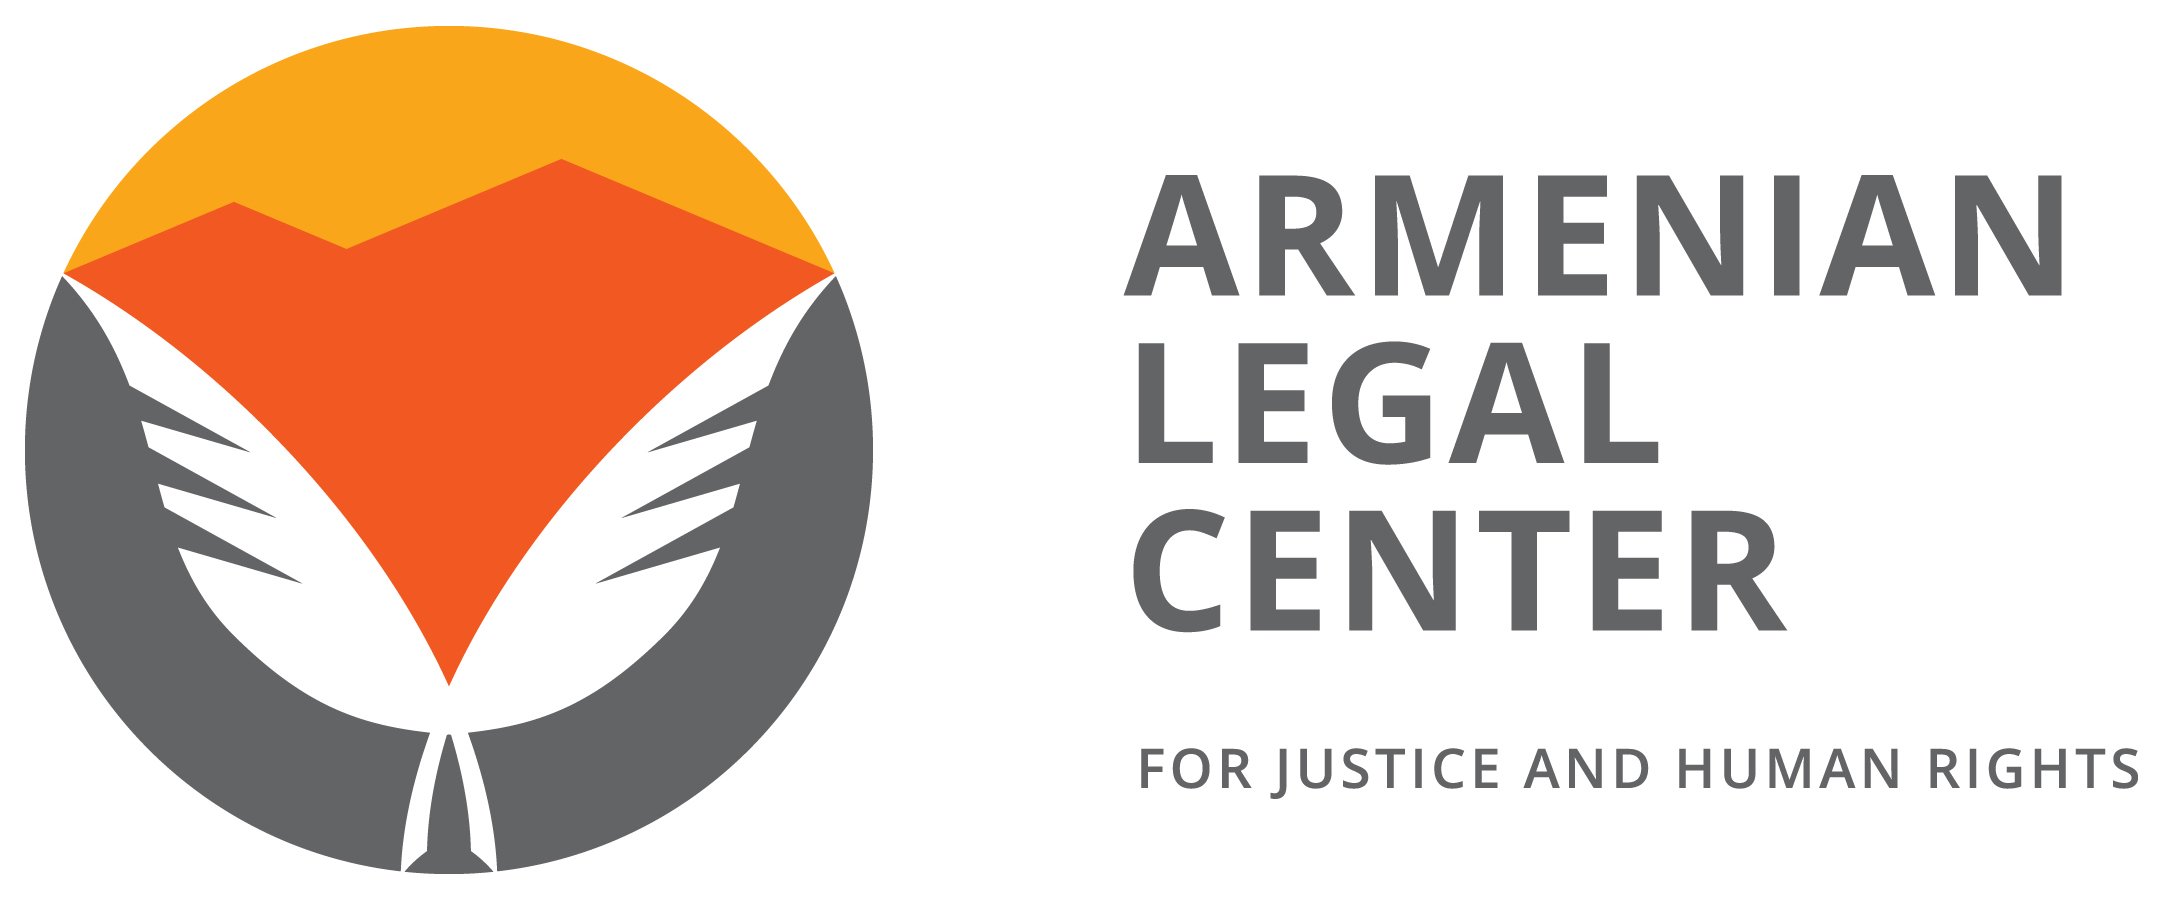 Հայկական իրավական կենտրոնը հայ գերիների անհետացումների և վերաբերյալ նոր գործեր է ներկայացրել Մարդու իրավունքների եվրոպական դատարան